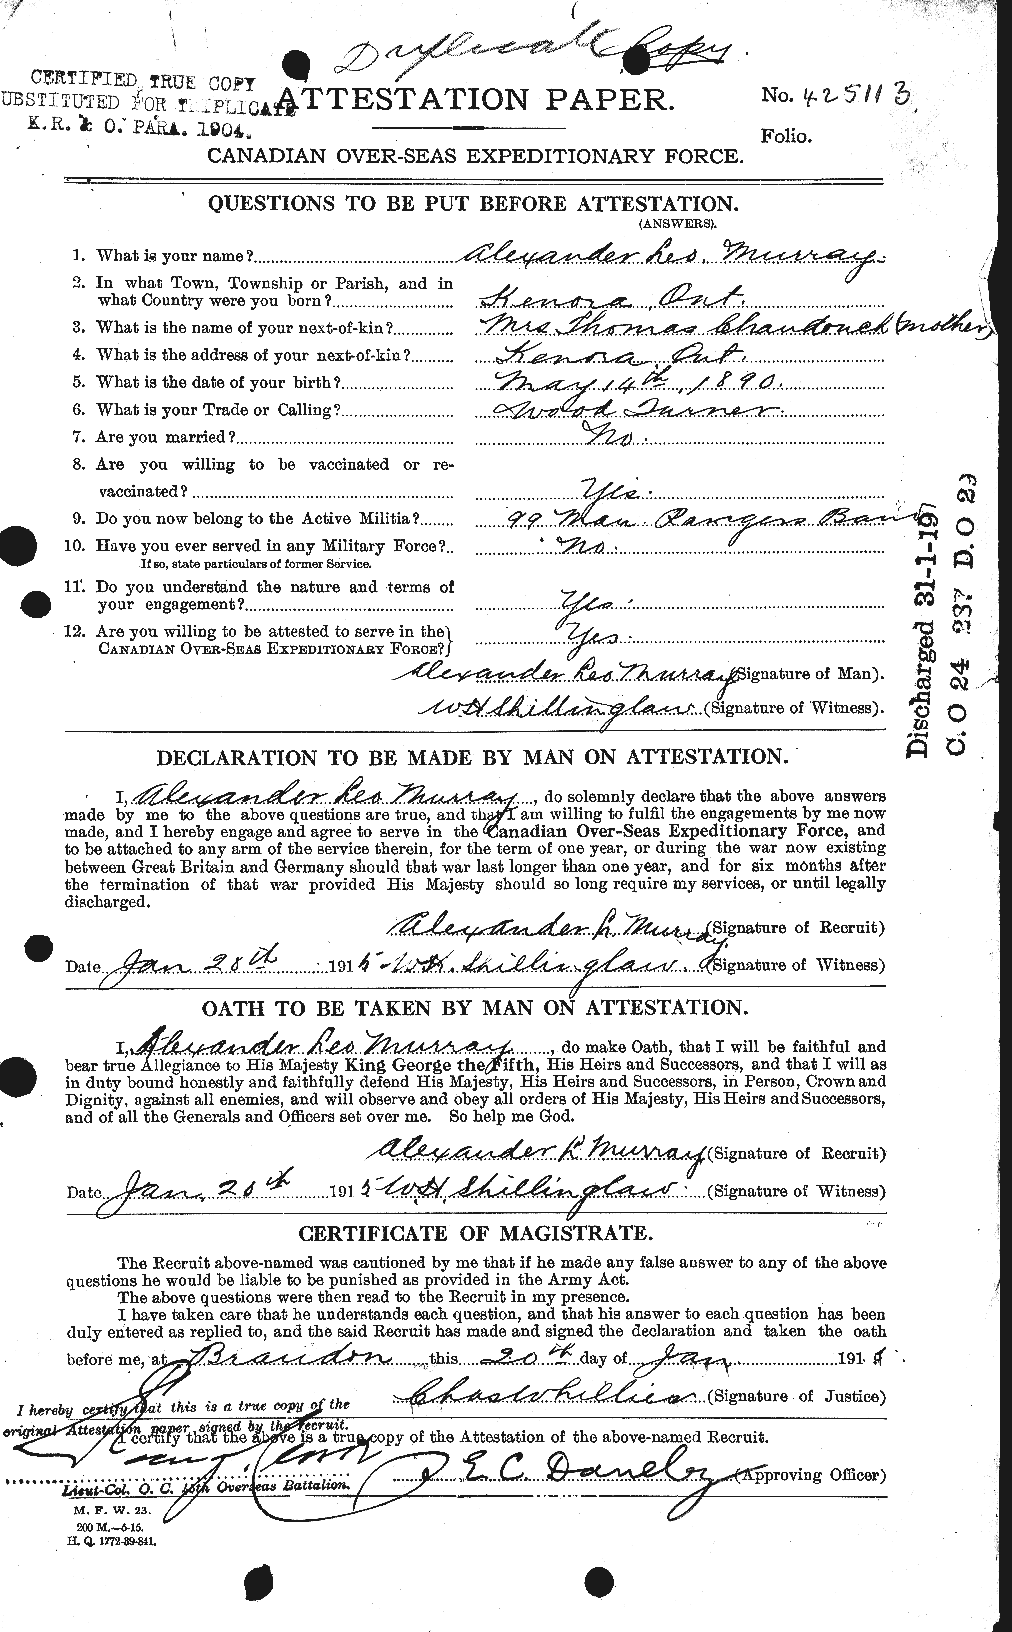 Dossiers du Personnel de la Première Guerre mondiale - CEC 512430a